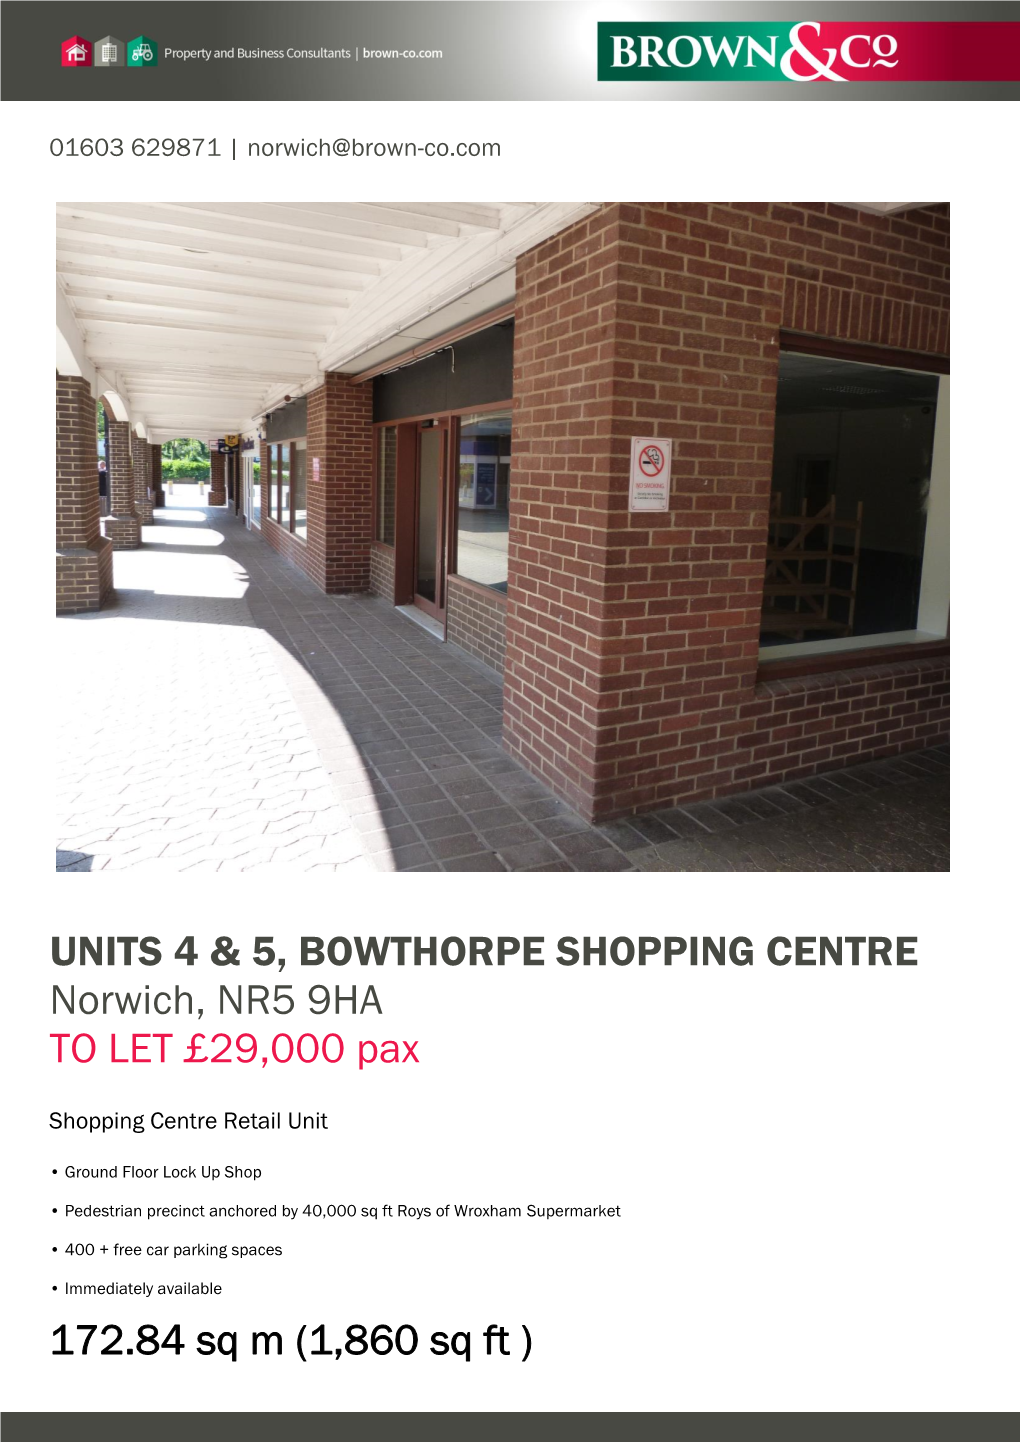 Units 4 & 5, Bowthorpe Shopping Centre